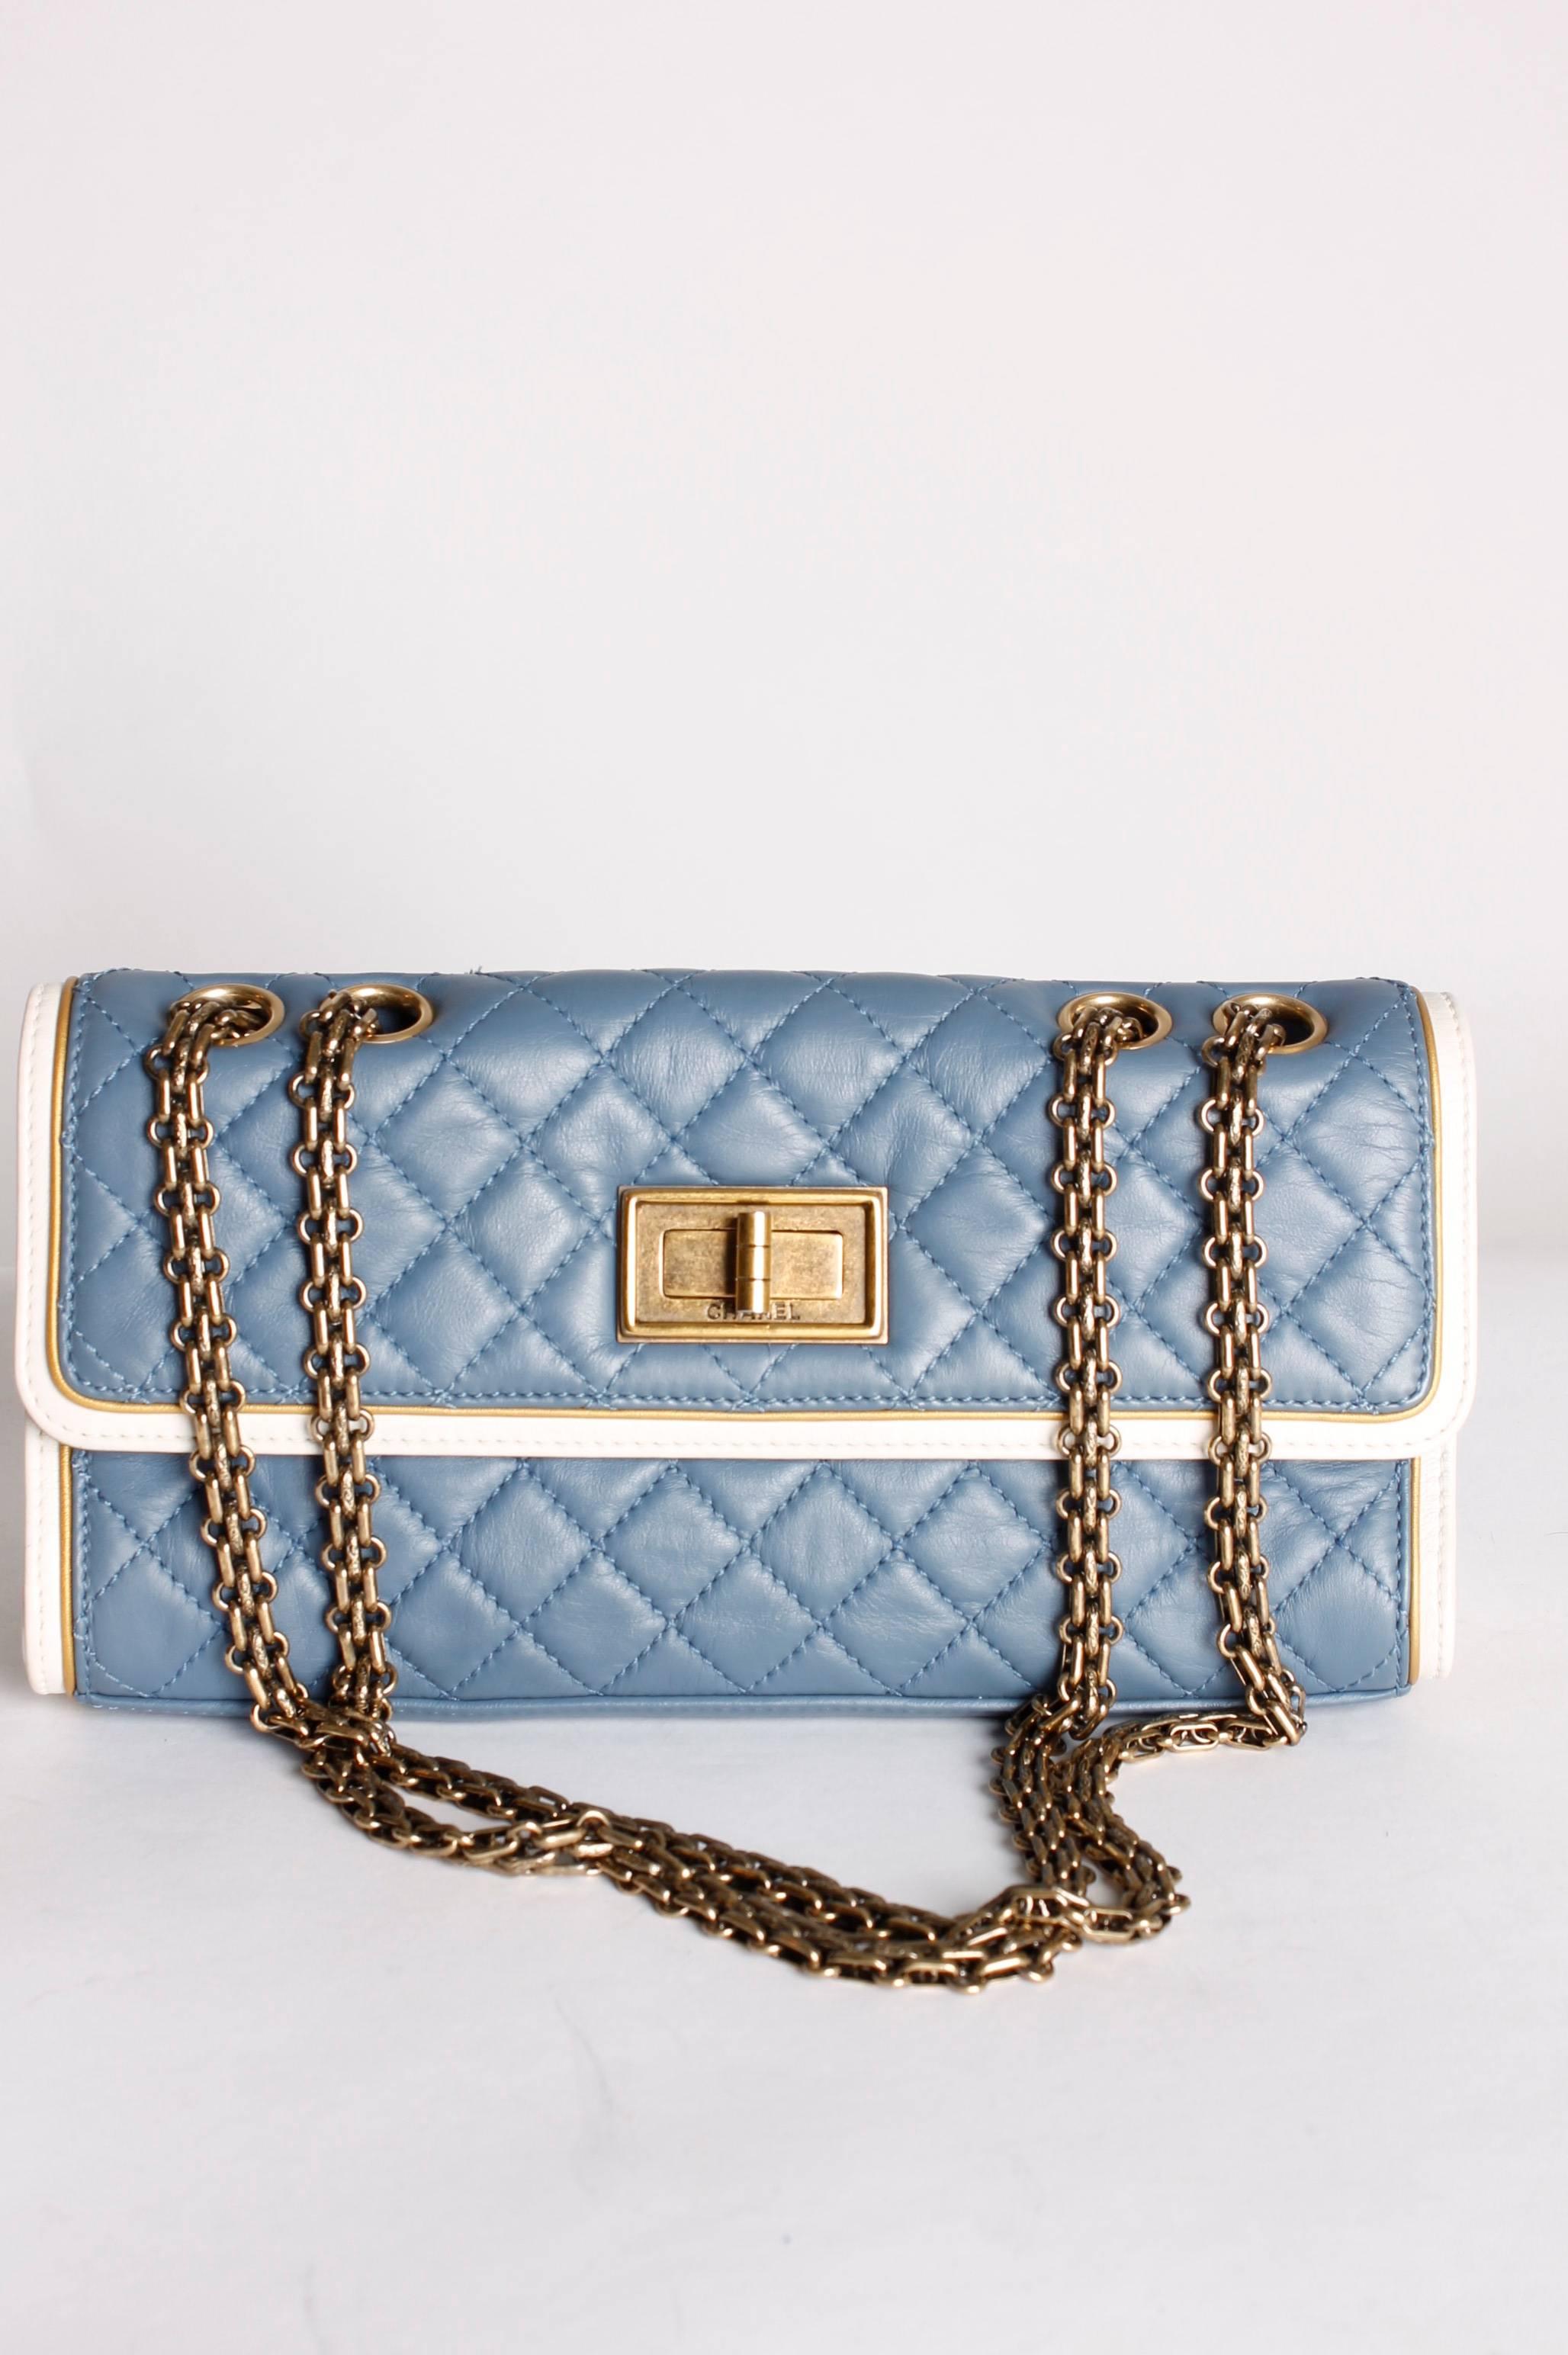 Gray Chanel Baguette Bag - light blue/off-white/bronze